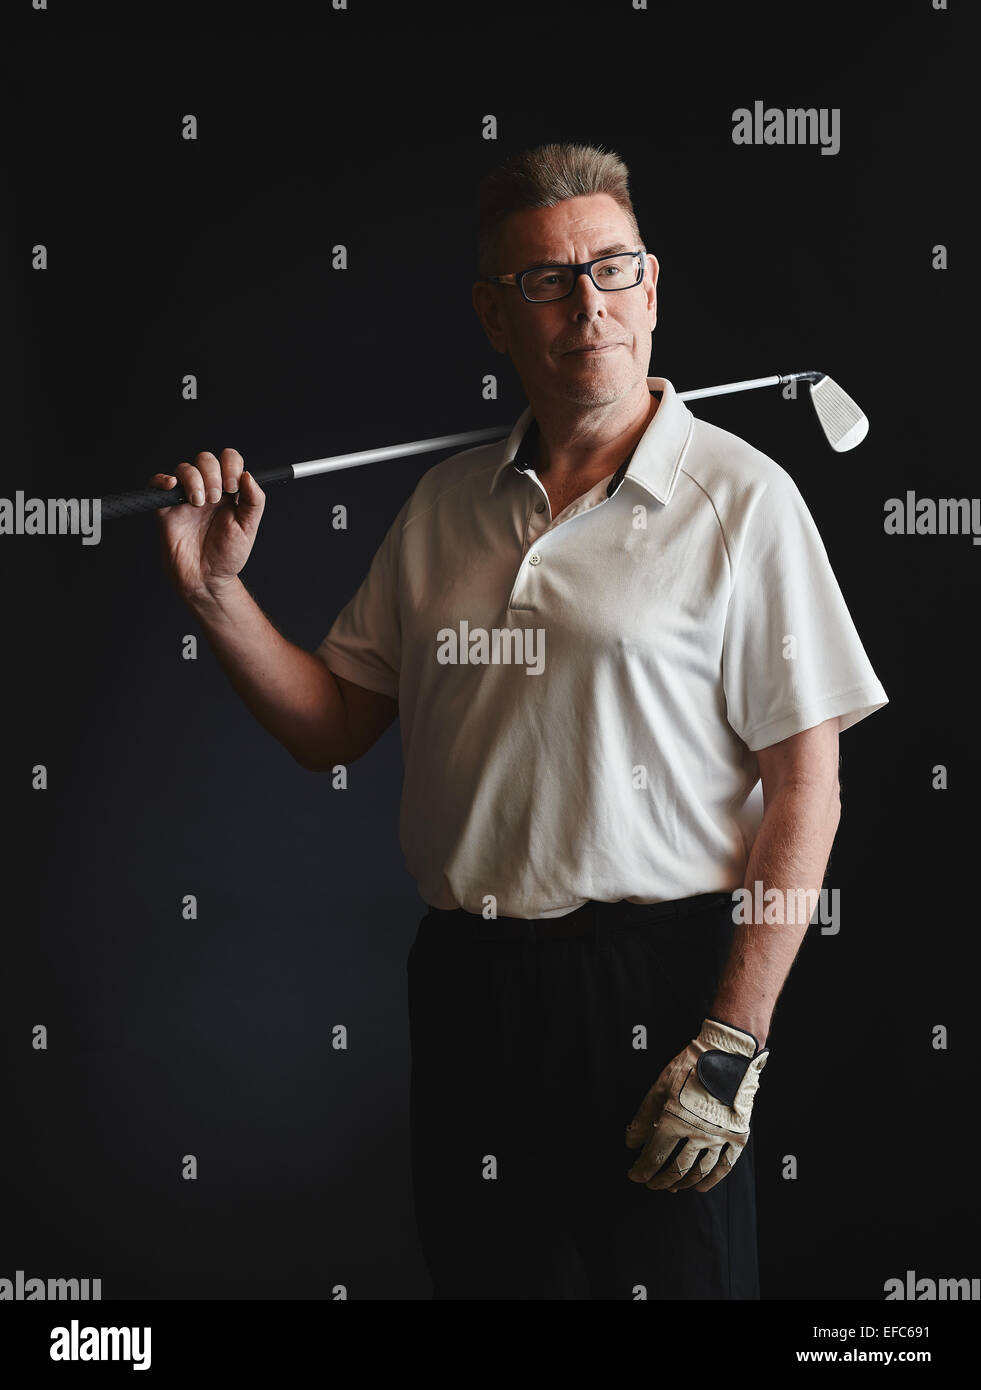 Hombre maduro golfista llevaba una camisa blanca y mantenga un club de golf de hierro sobre su hombro - studio shot, fondo negro Foto de stock